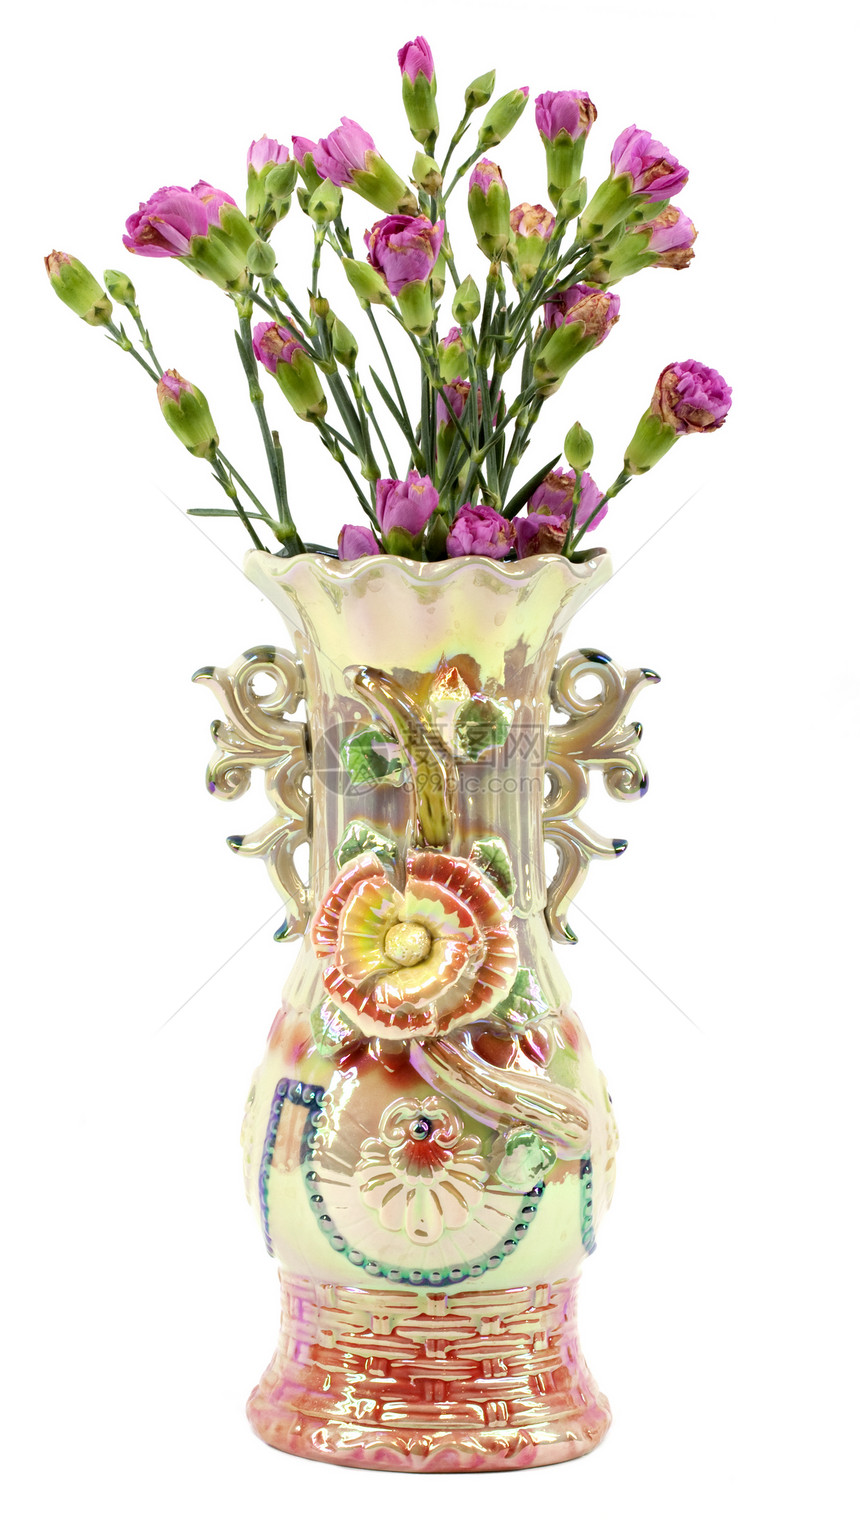 白底带粉红康乃馨的花瓶图片